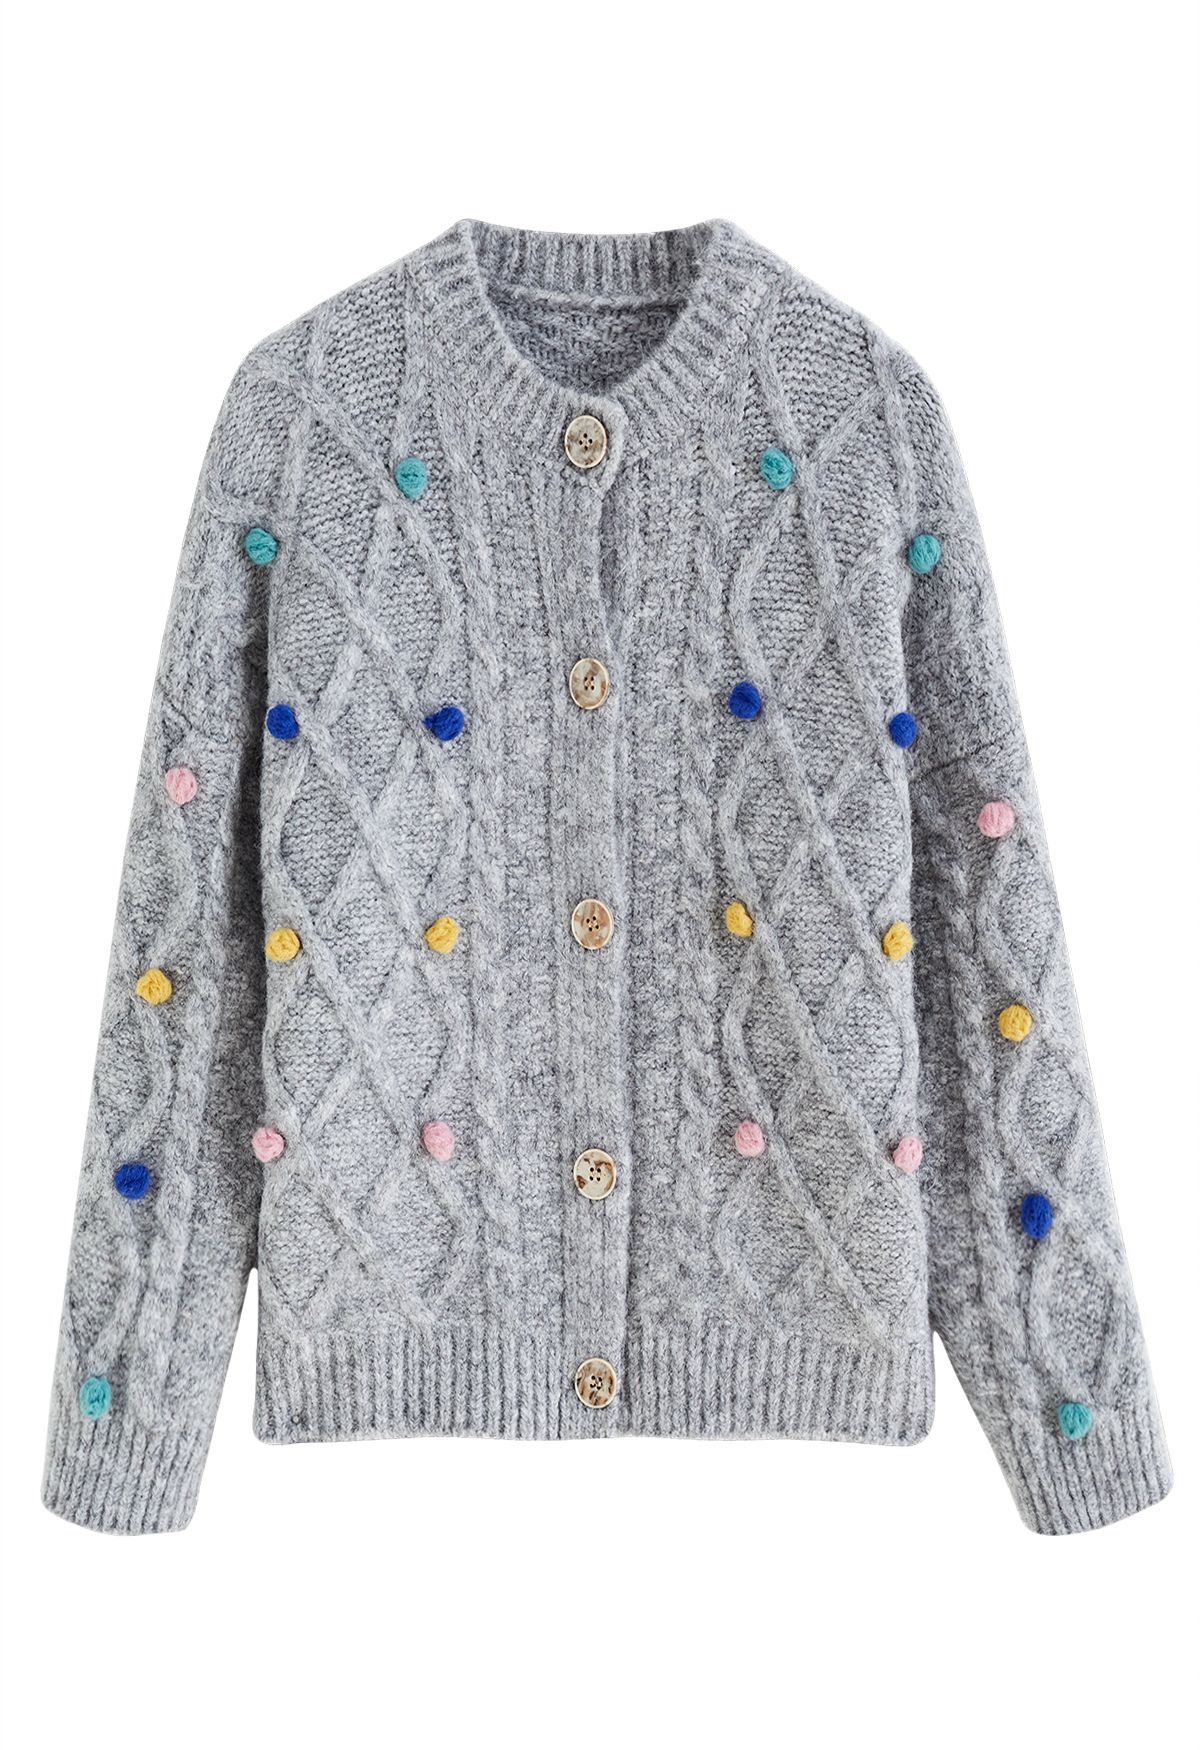 Colorful Pom-Pom Diamond Knit Cardigan in Grey | Chicwish